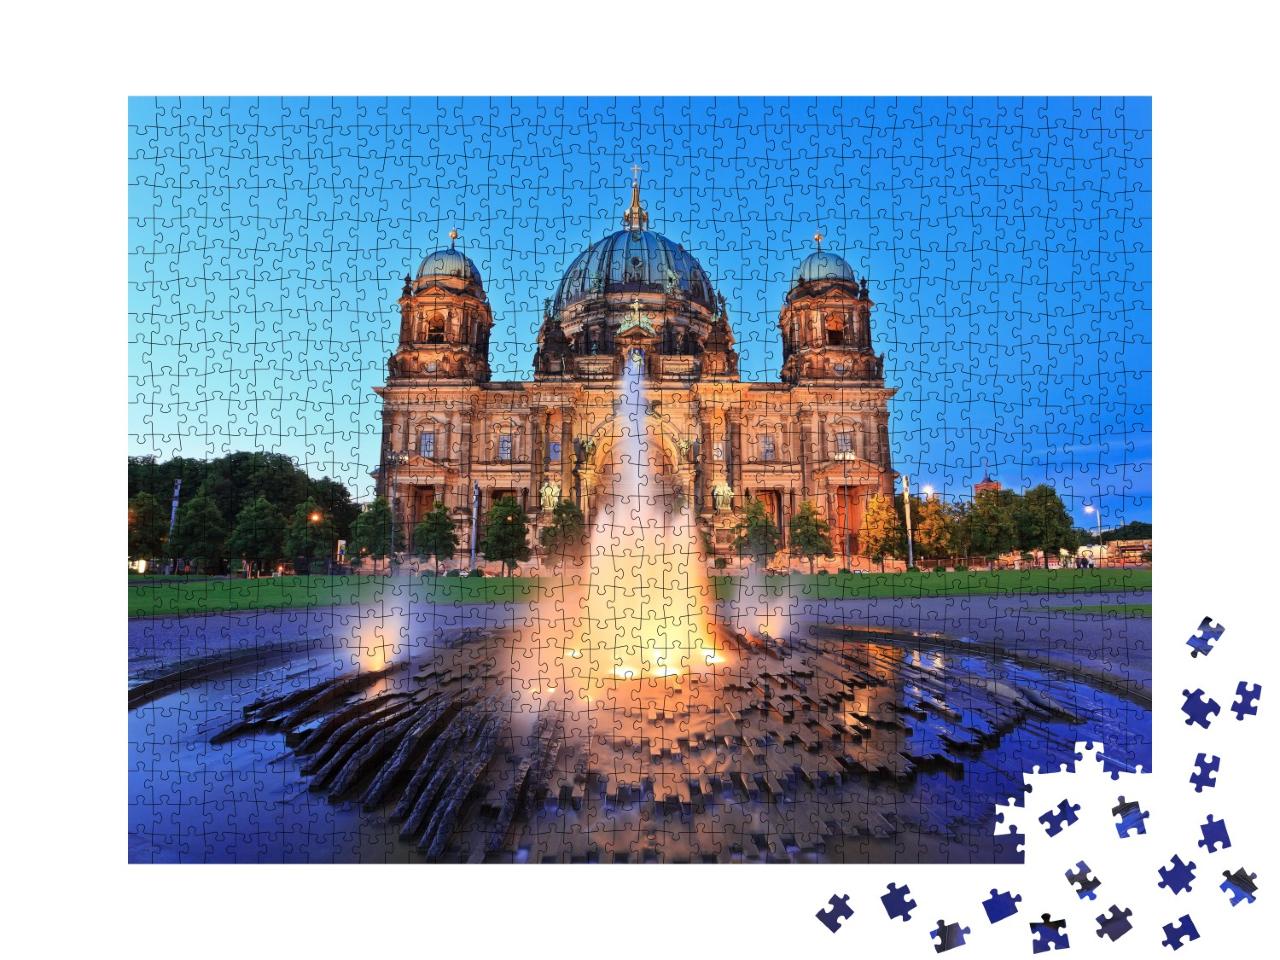 Puzzle de 1000 pièces « Cathédrale de Berlin de nuit »